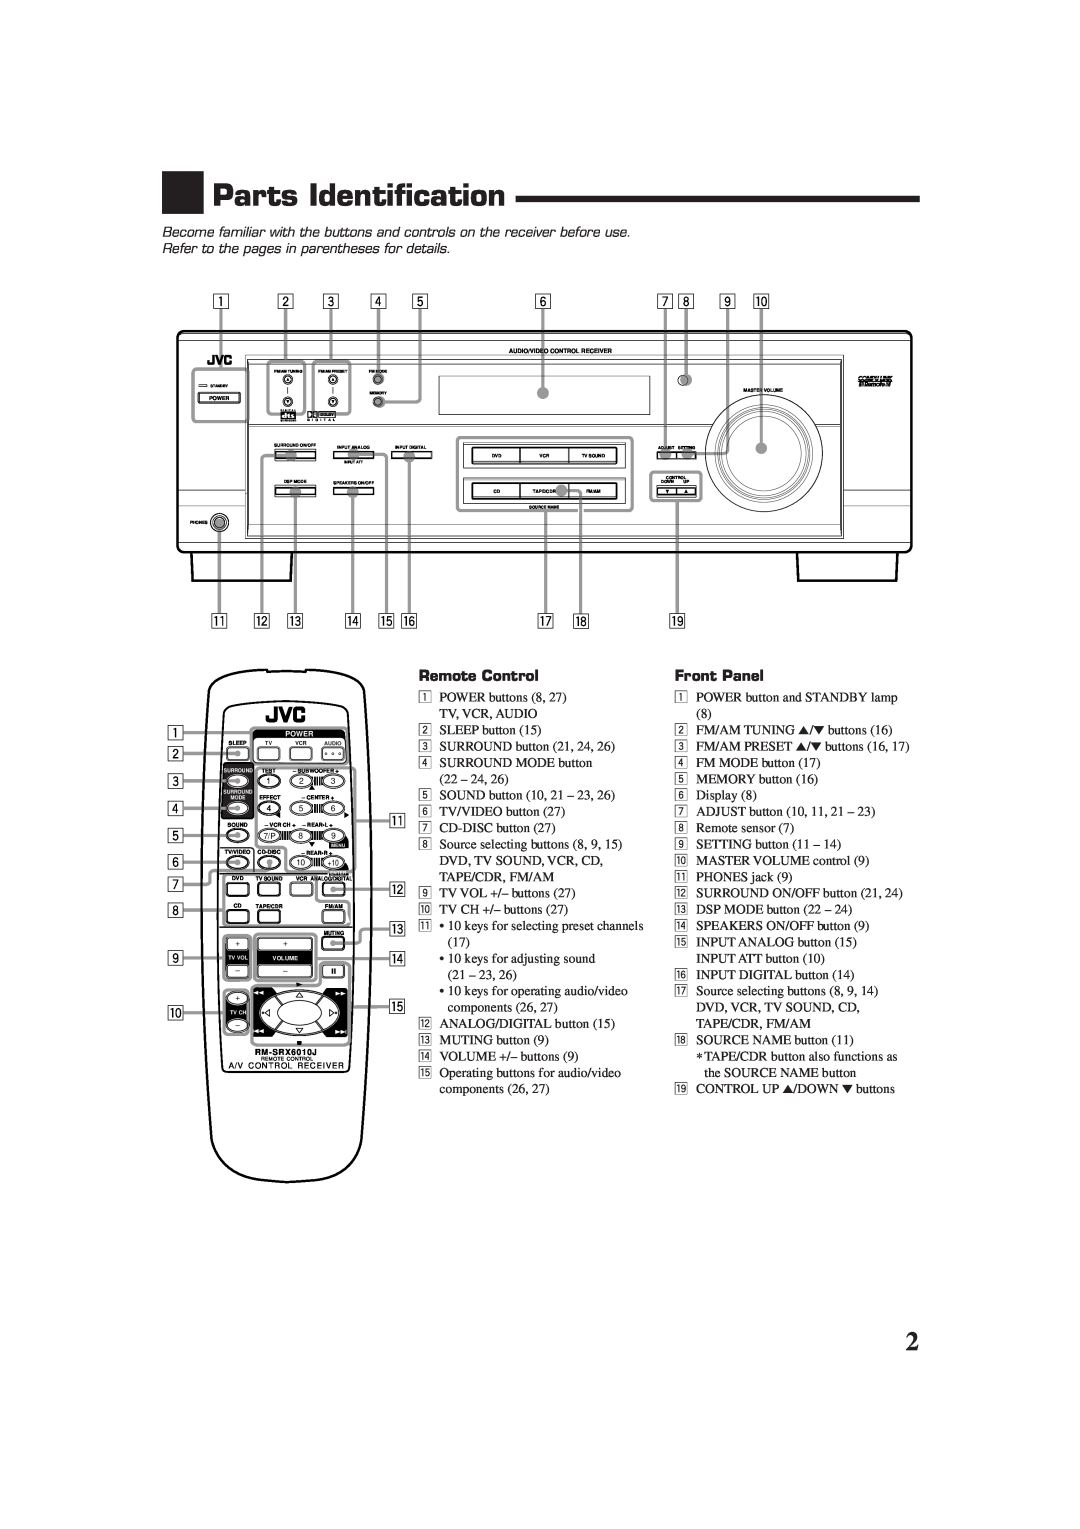 JVC RX-6018VBK manual Parts Identification, q w e r t y, 1 2 3 4 5 6 7 8 9 p, Remote Control, Front Panel 